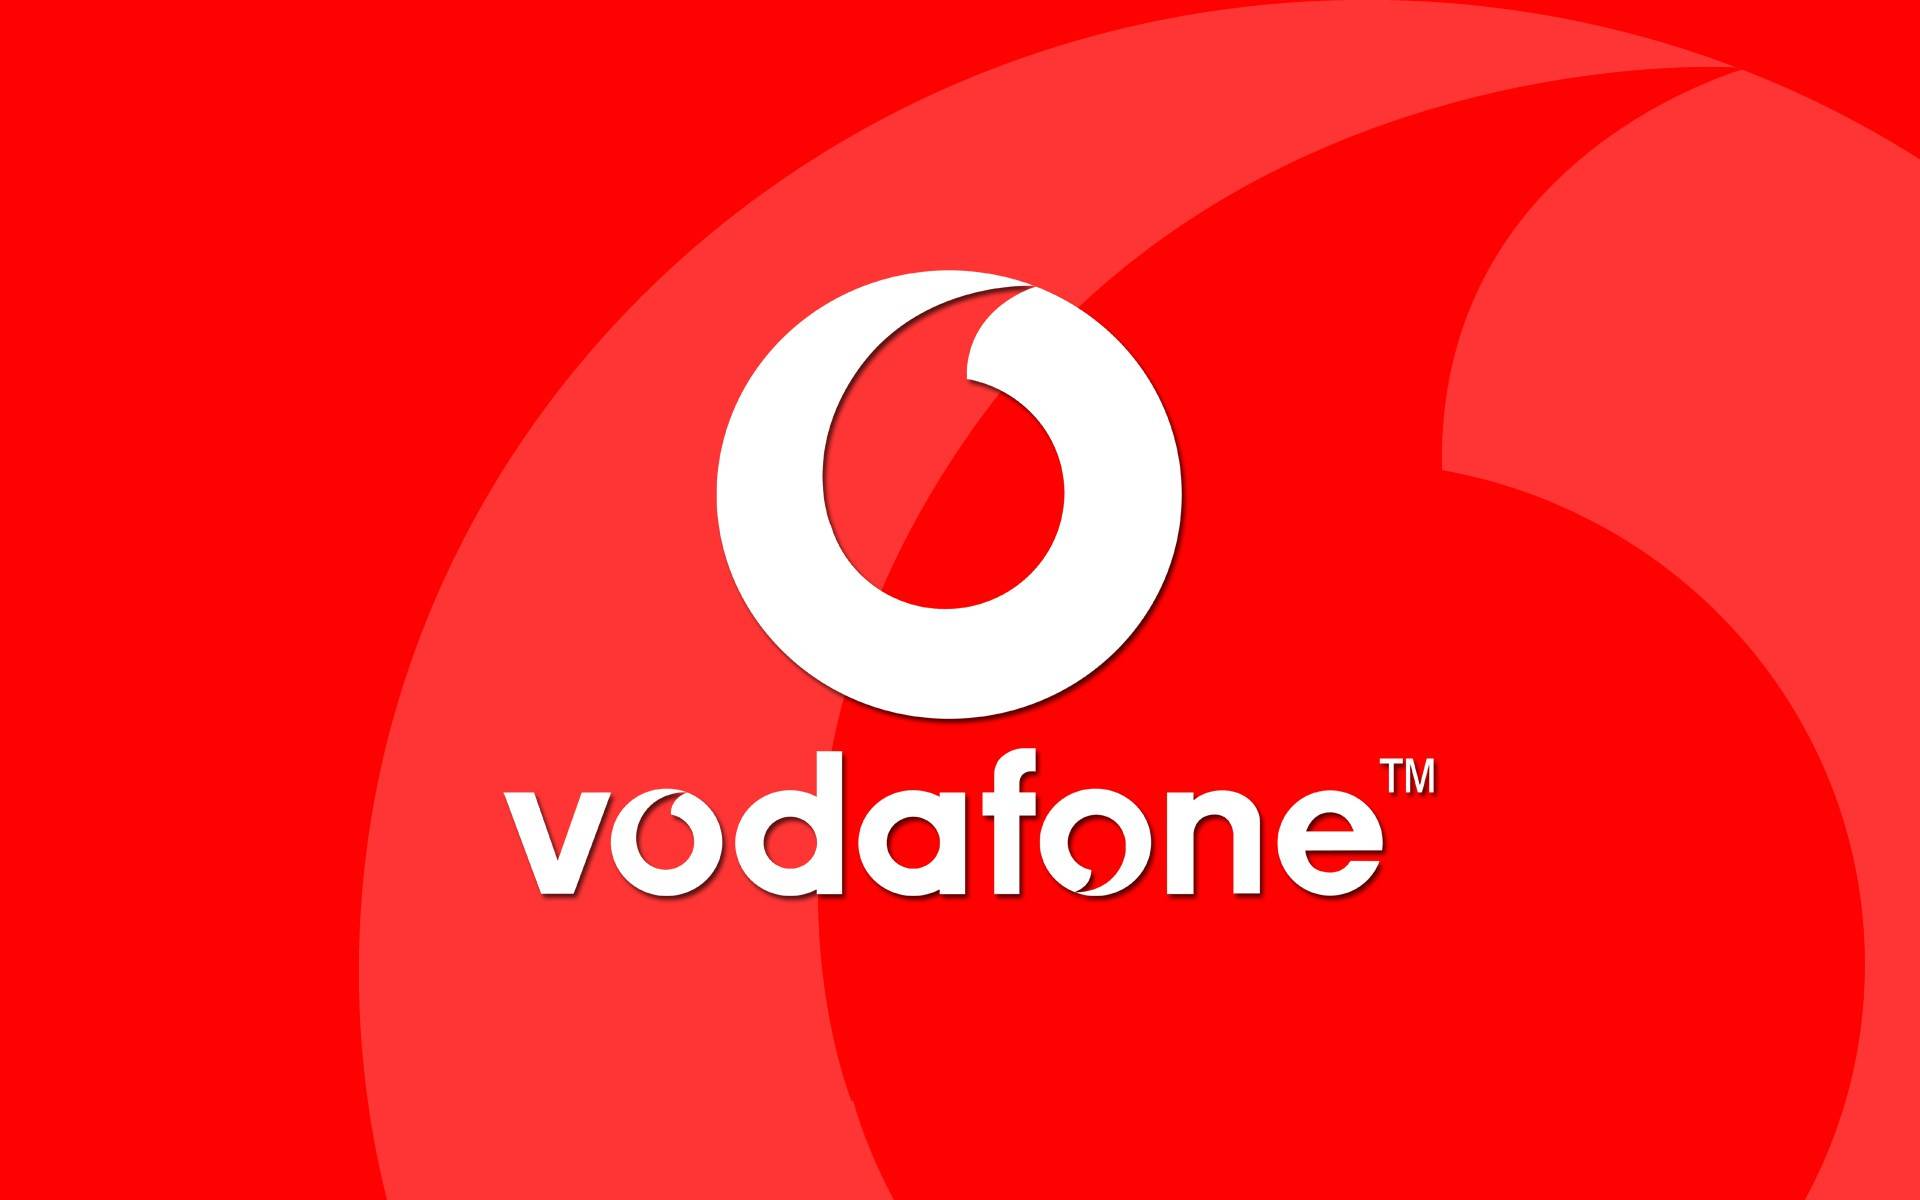 Vodafone: Telefoane Mobile cu Reduceri foarte BUNE inainte de 1 Decembrie